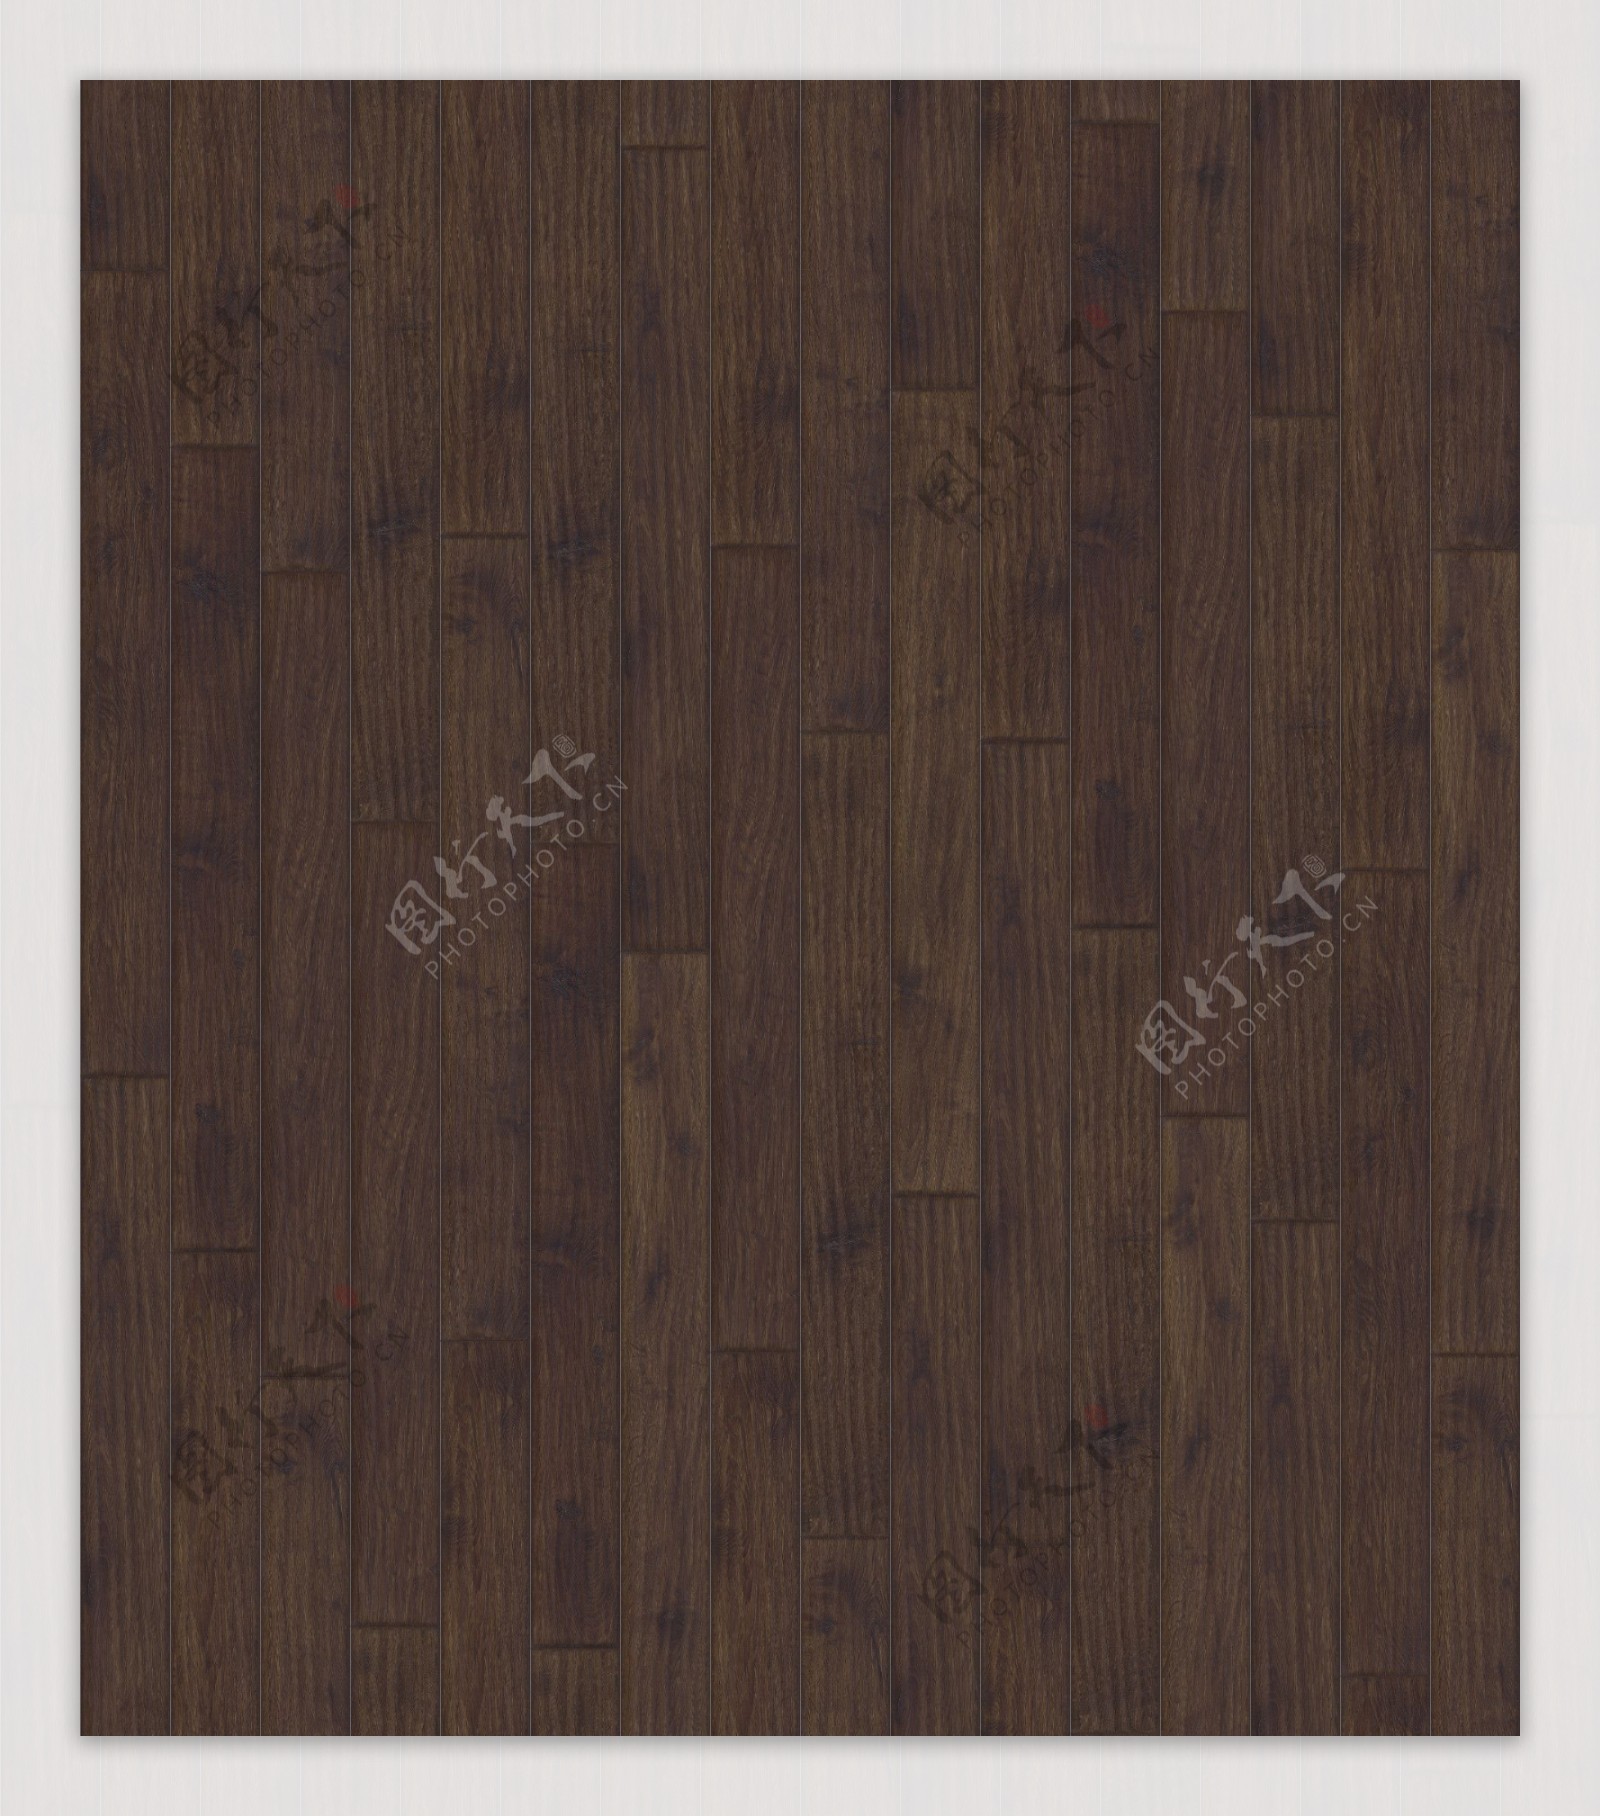 常用的深色木地板材料贴图